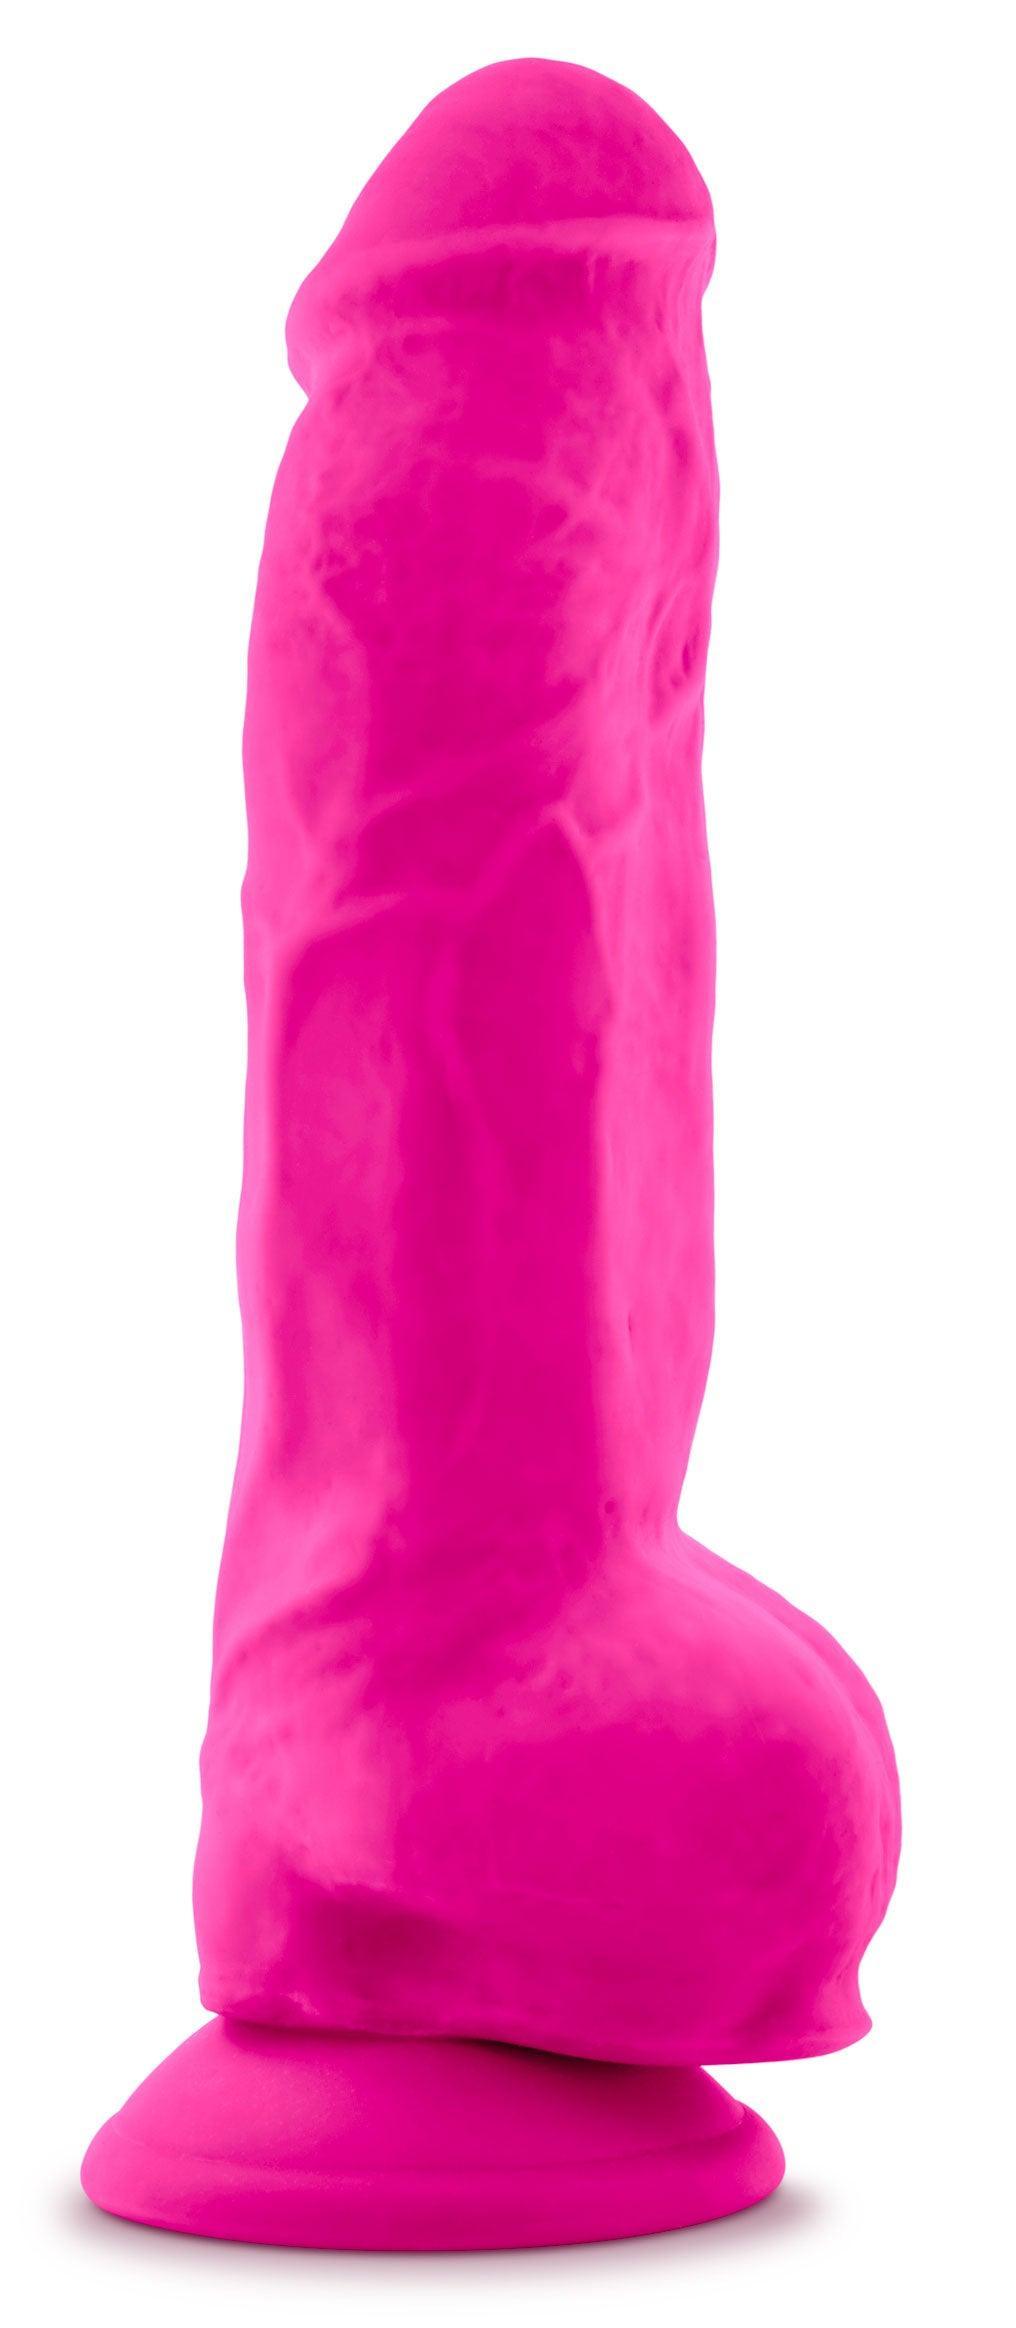 Au Naturel - Bold - Big Boy - 10 Inch Dildo - Pink - My Sex Toy Hub